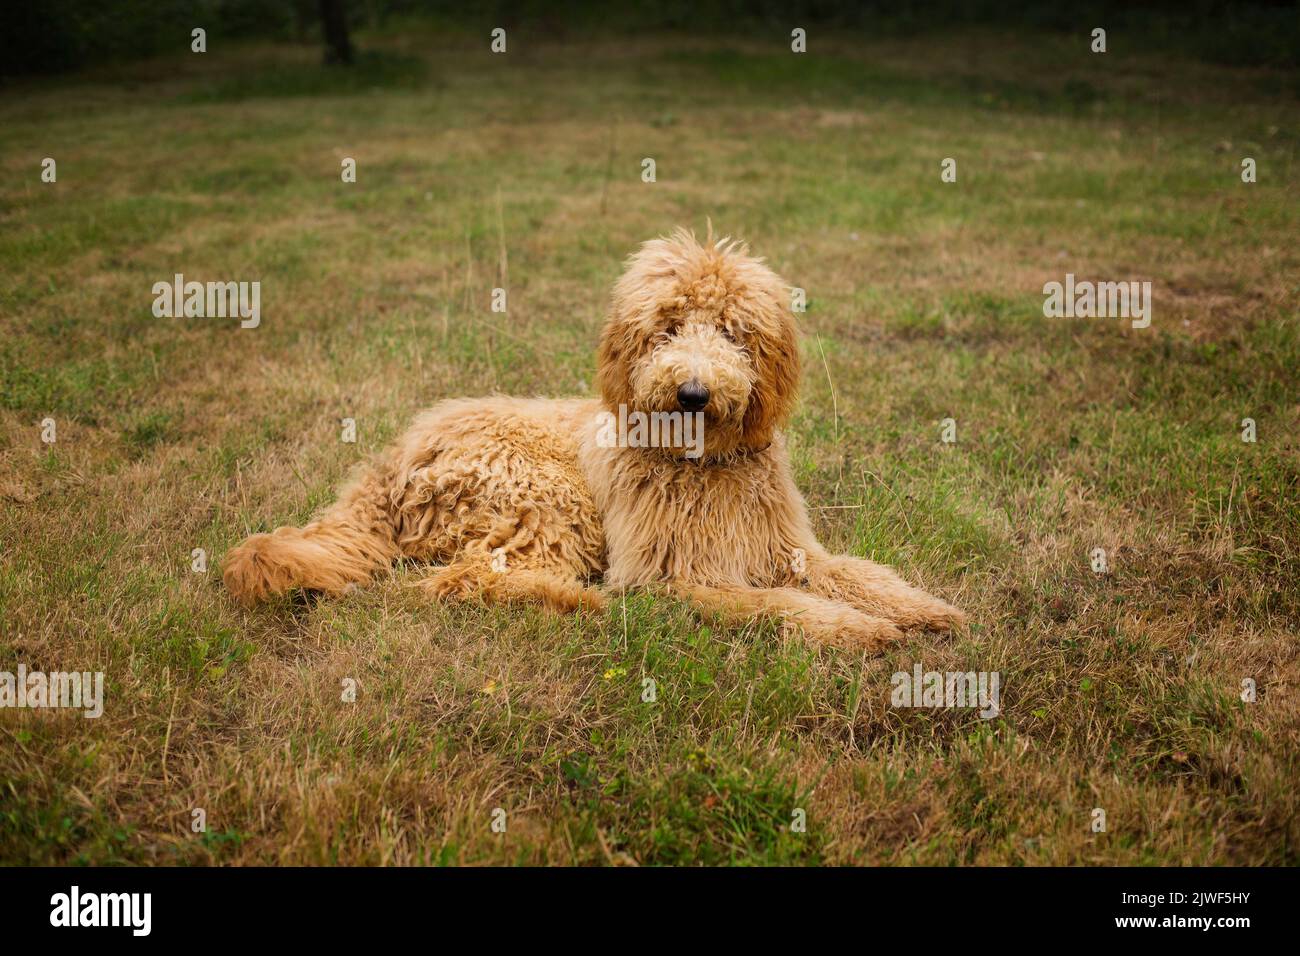 Los Goldendoodles son una mezcla adorable entre el Golden Retriever y el Poodle Foto de stock